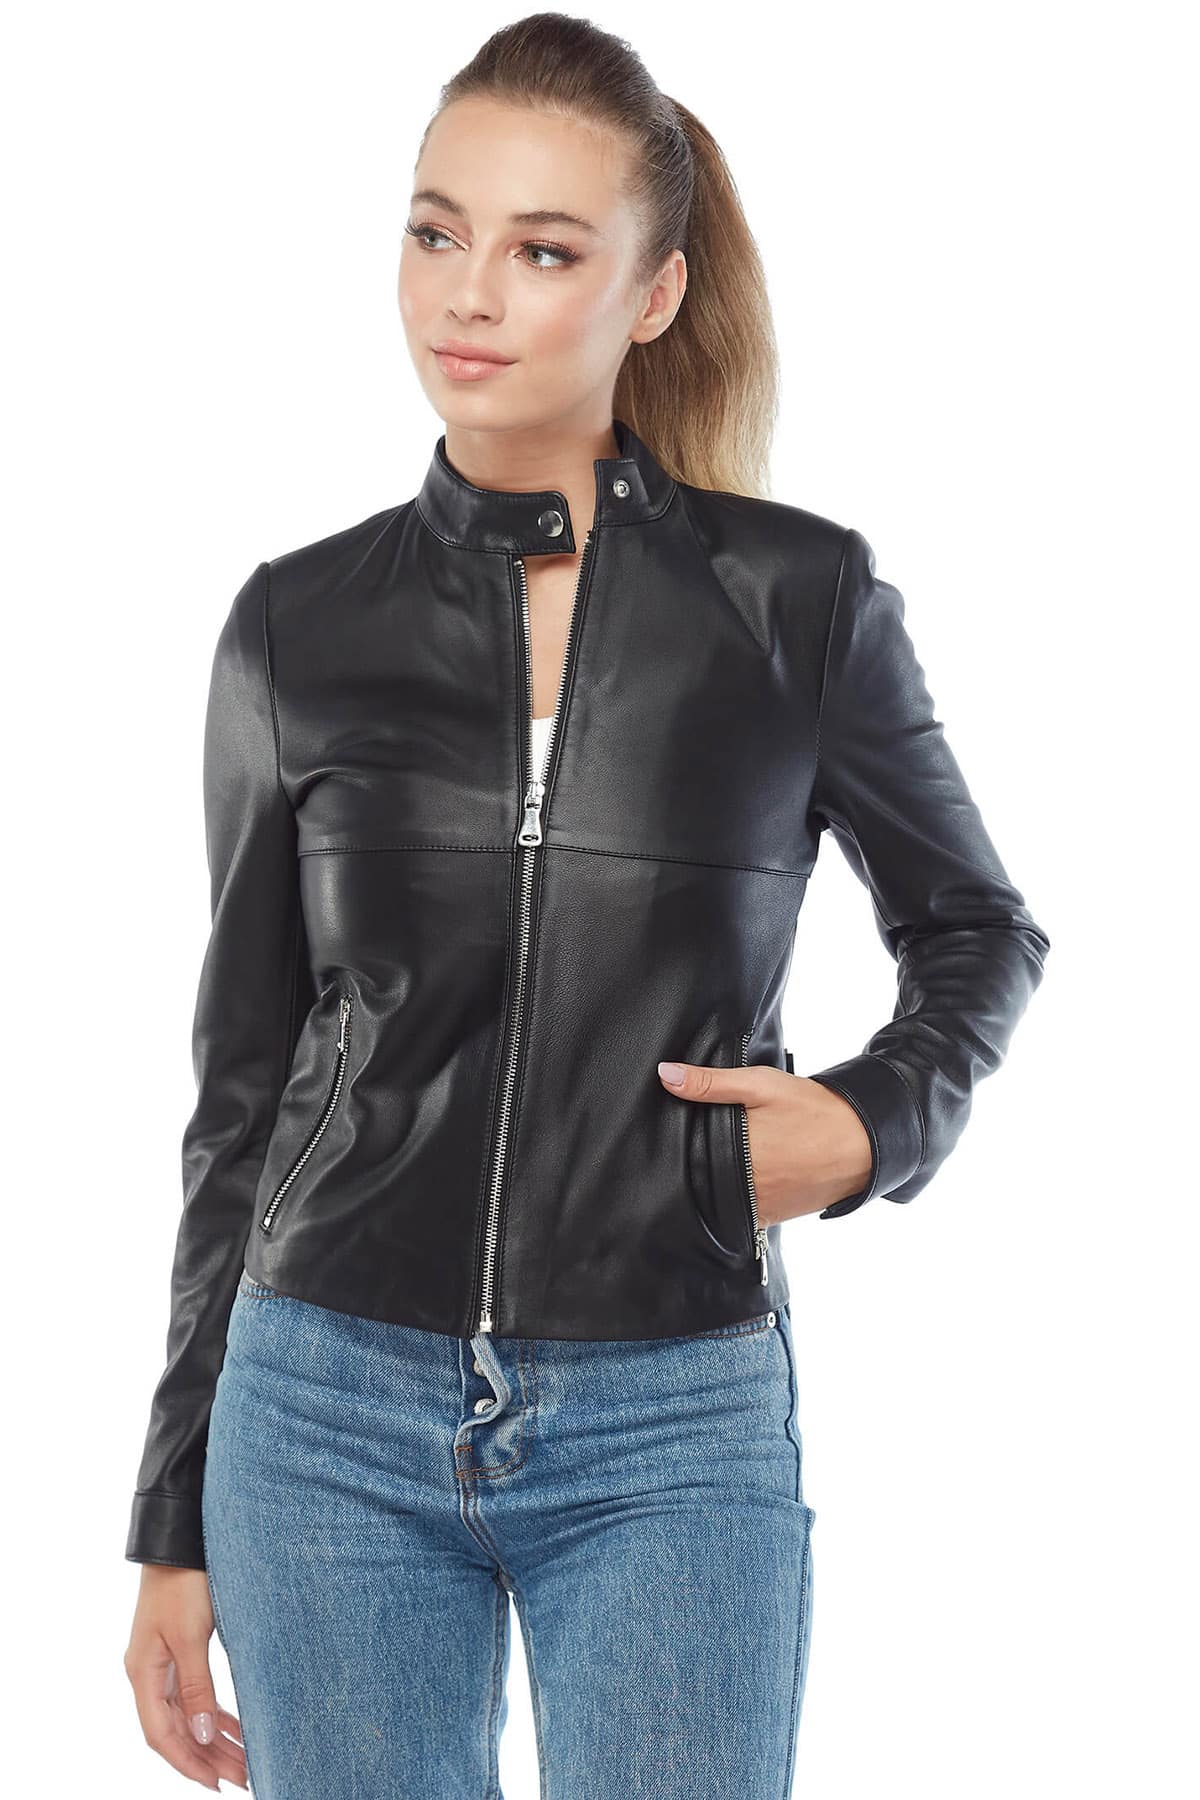 Mia Women's 100% Real Black Leather Moto Jacket